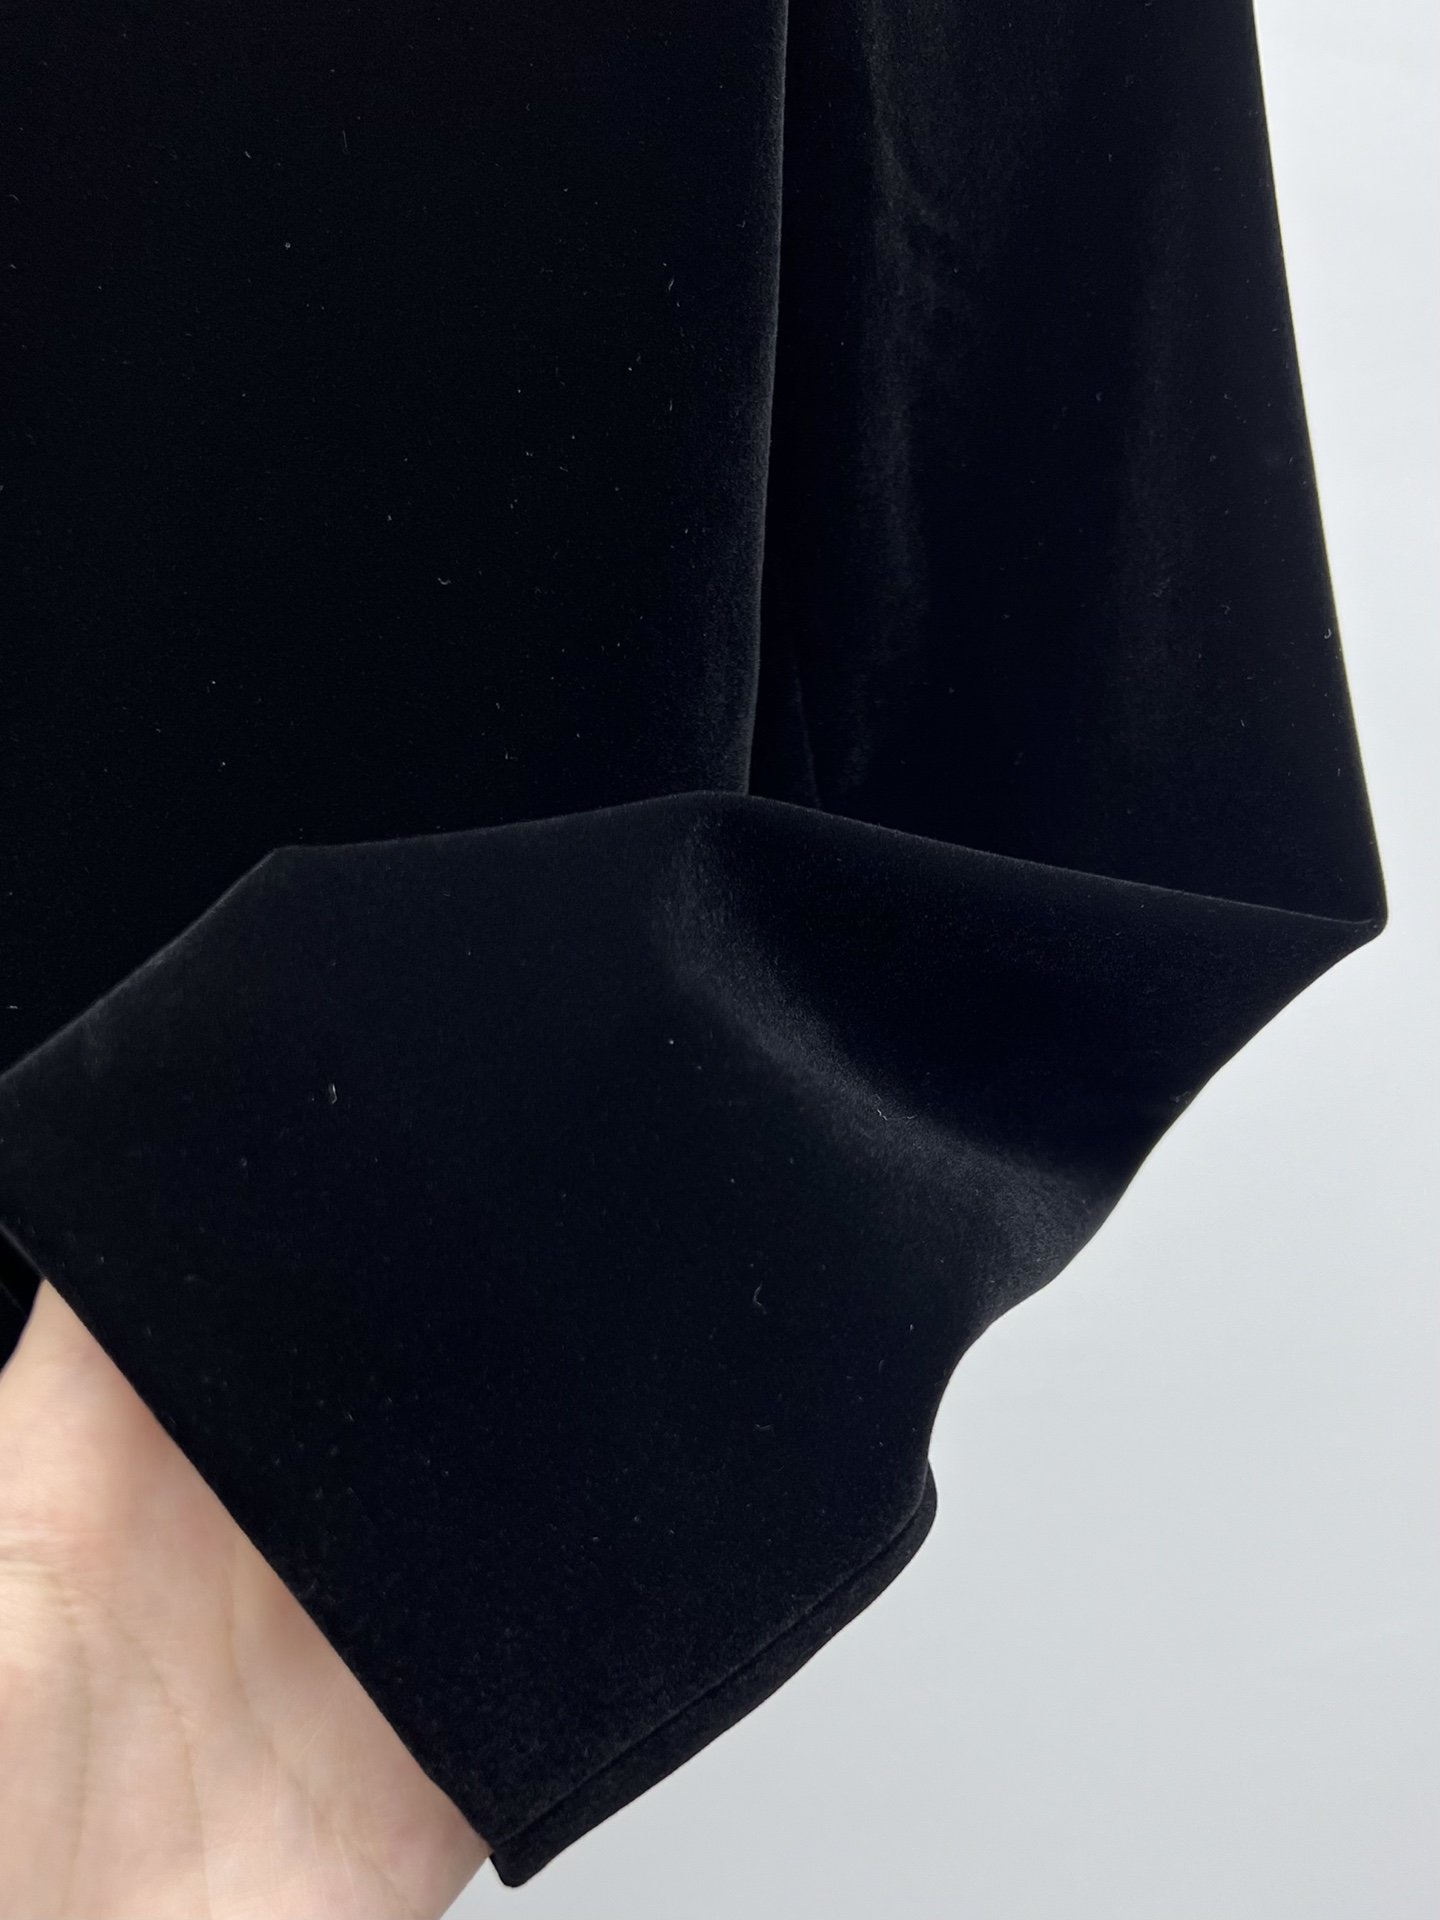 PRAD*丝绒圆领夹克选用细腻柔软的丝绒质感打造挺括的肩部设计与优雅的圆领廓形优雅融合精致细节与休闲格调